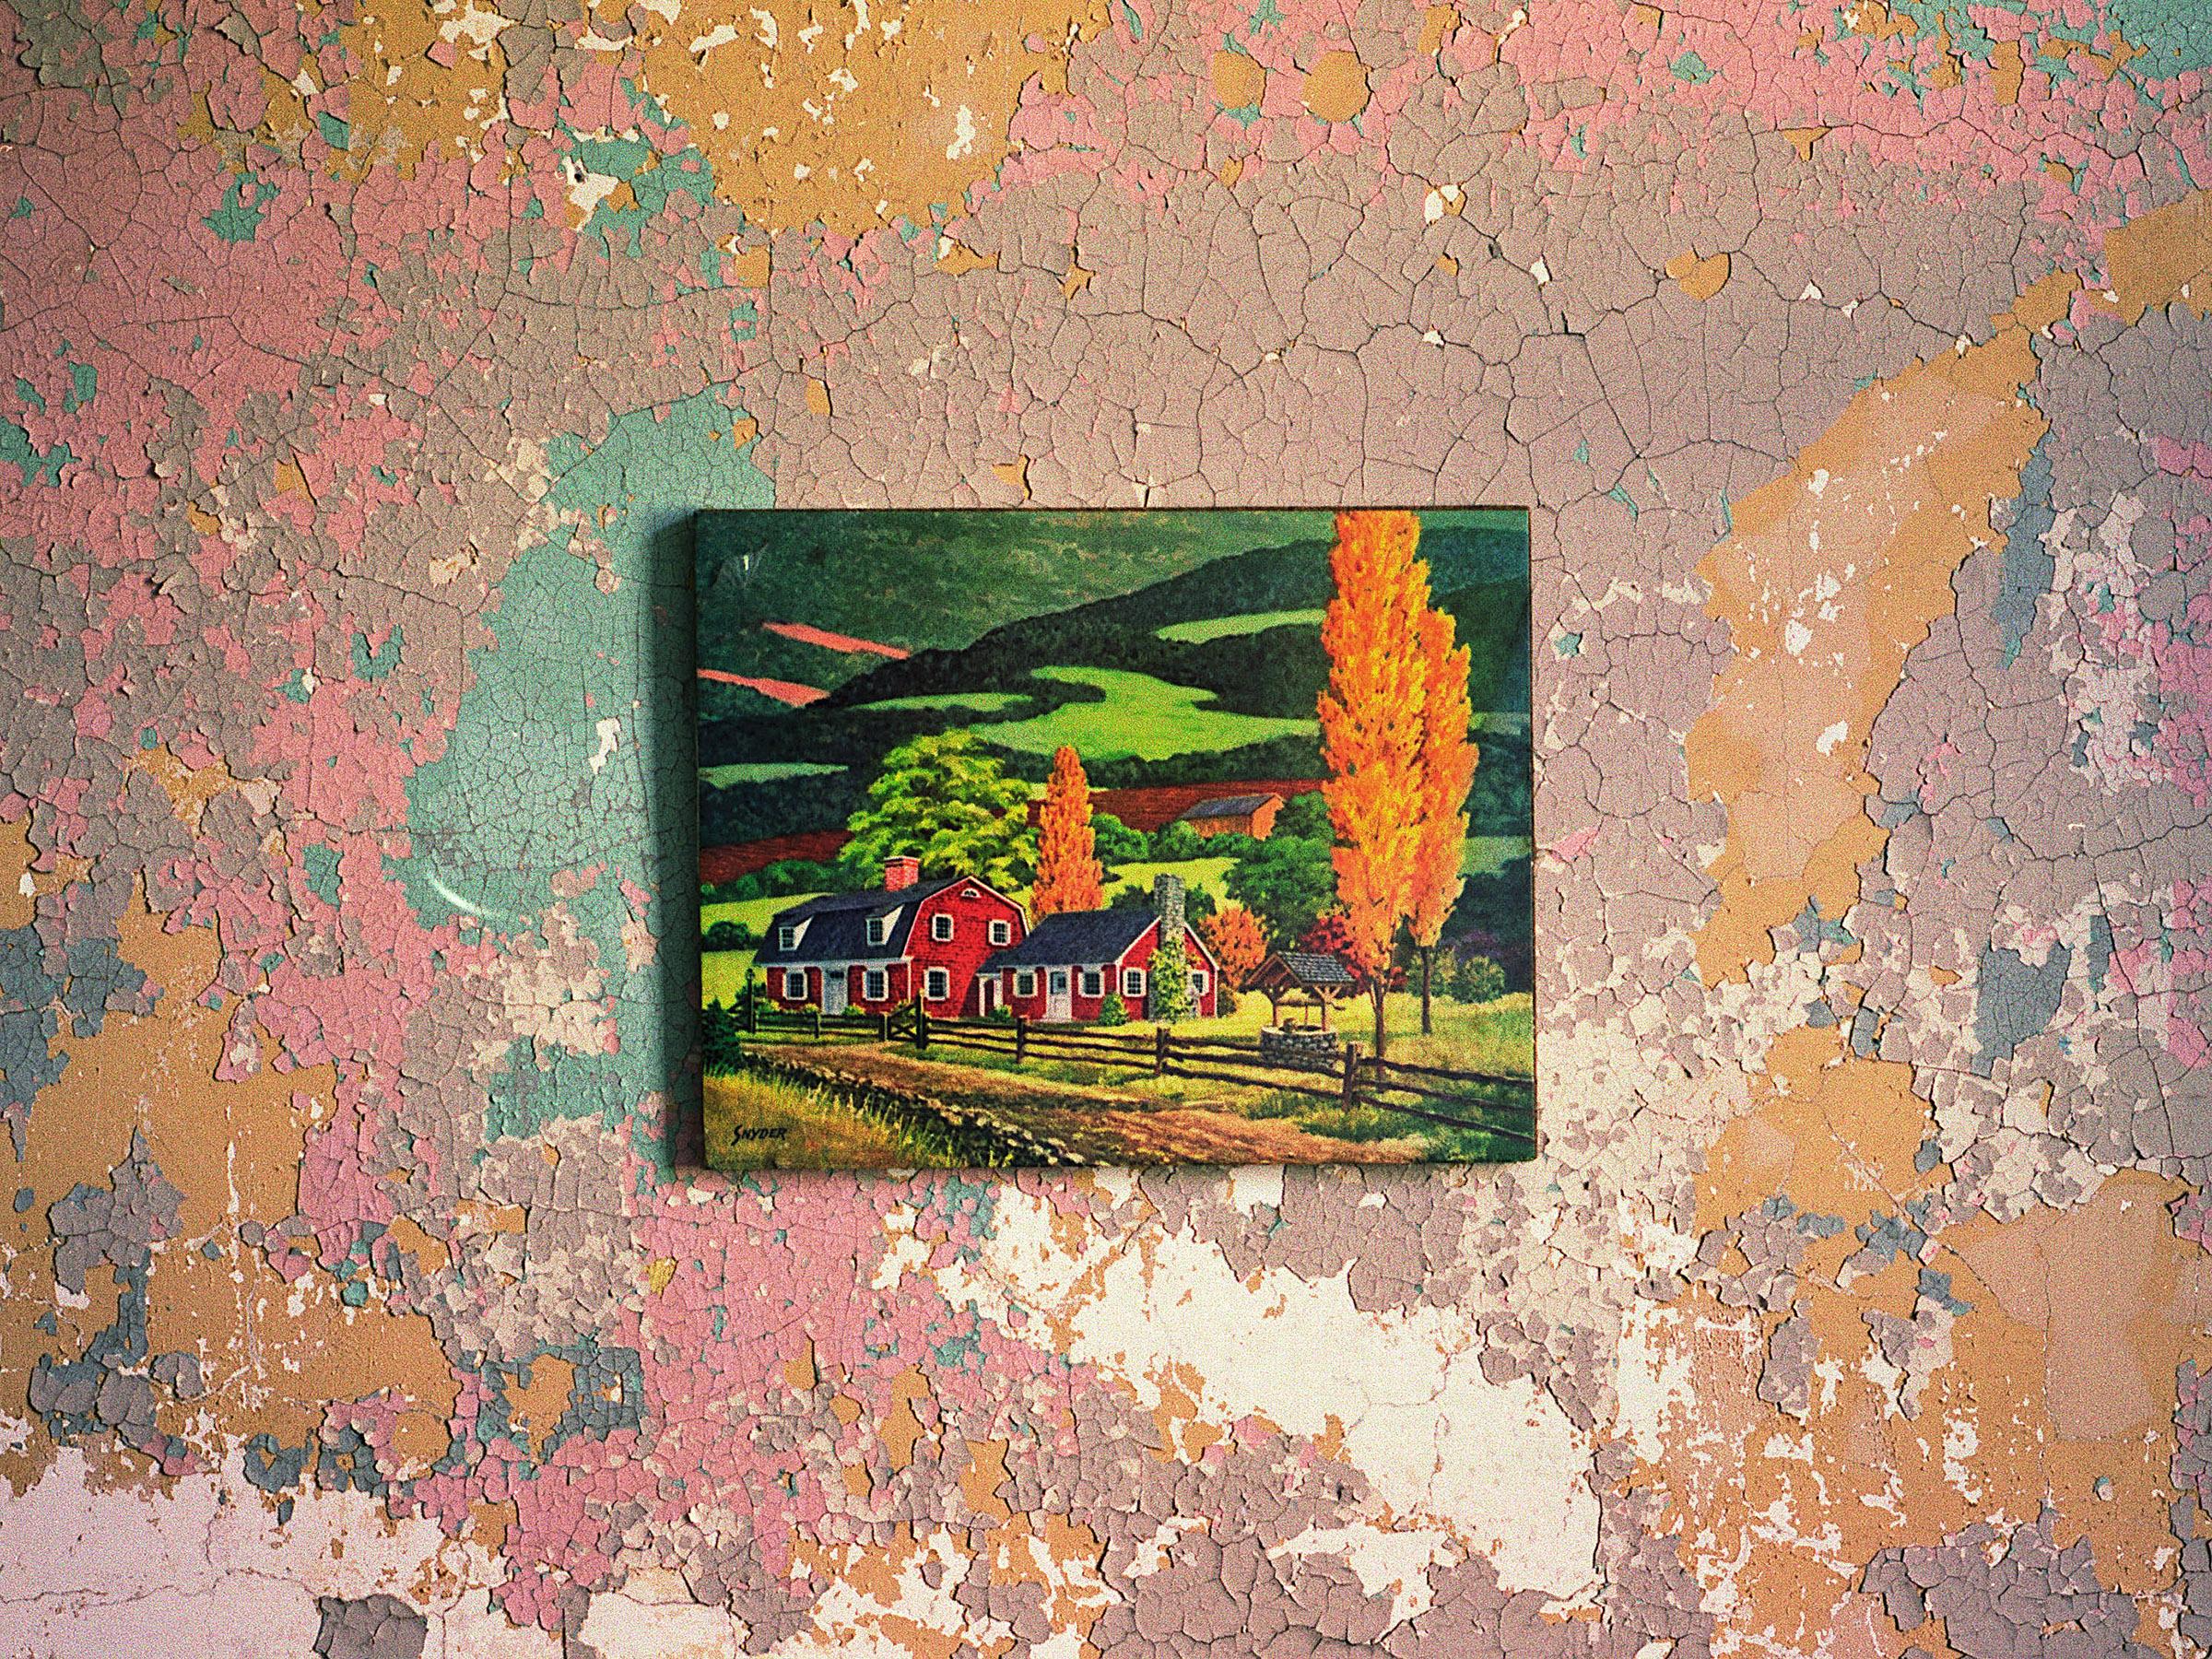 Abstract Photograph Phillip Buehler - Photographie couleur « Water Well », peinture de paysage de ferme d'automne sur mur abstrait